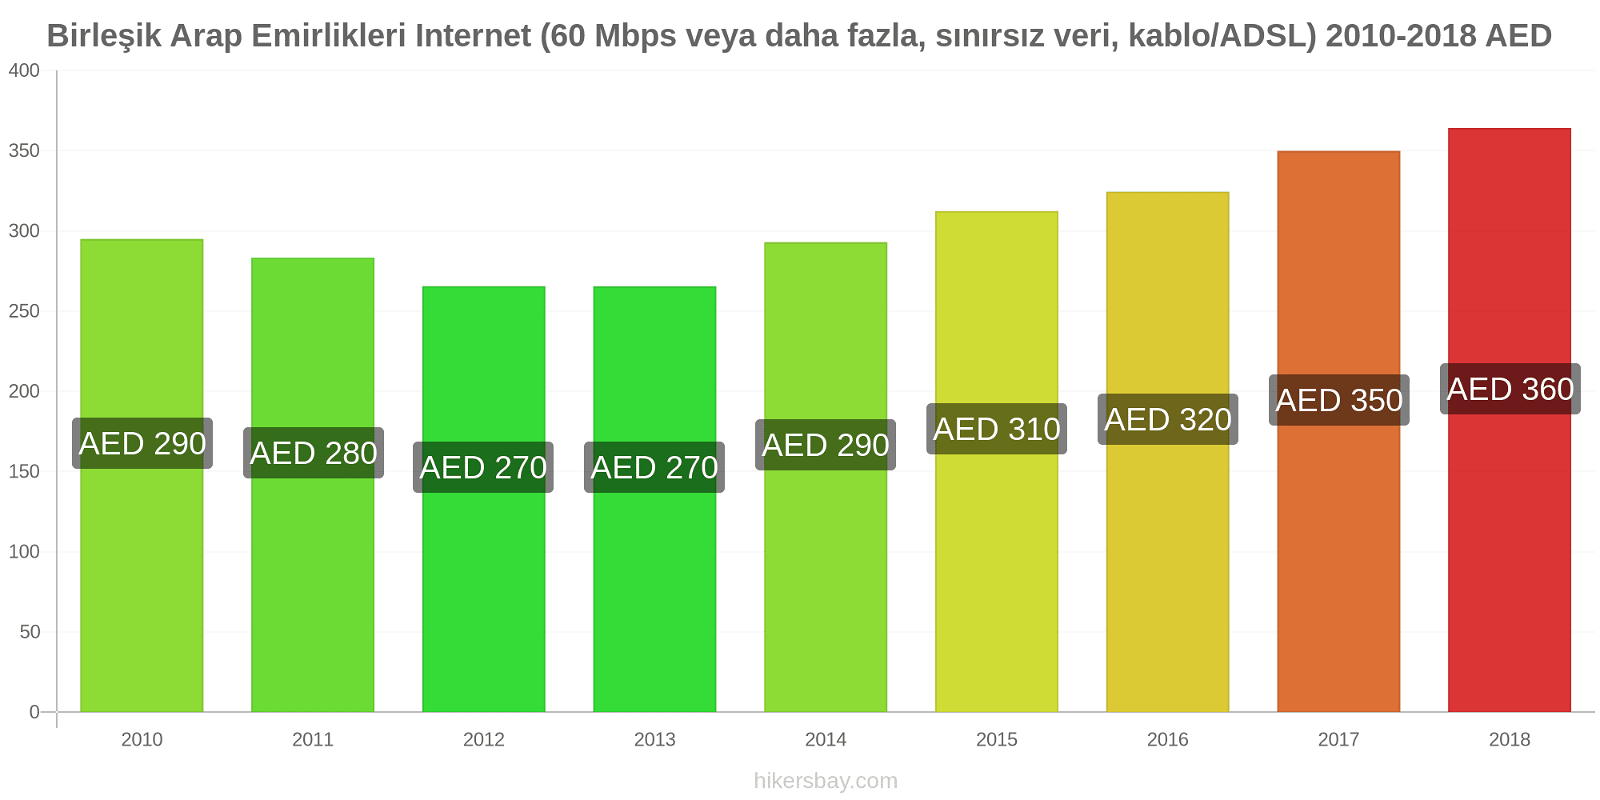 Birleşik Arap Emirlikleri fiyat değişiklikleri İnternet (60 Mbps veya daha fazla, sınırsız veri, kablo/ADSL) hikersbay.com